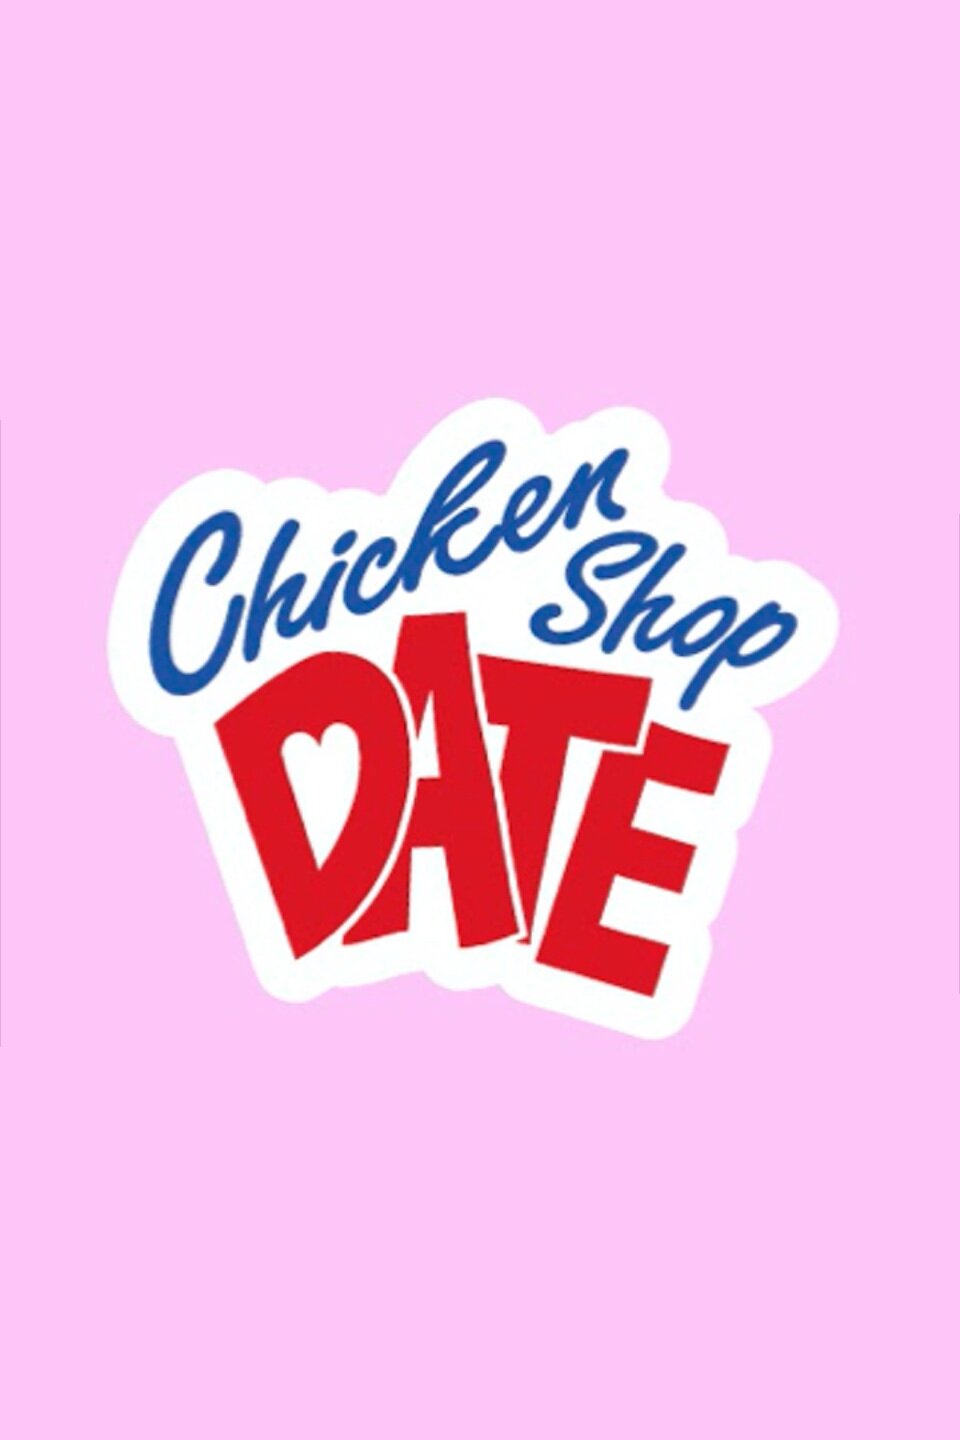 Chicken Shop Date ne zaman